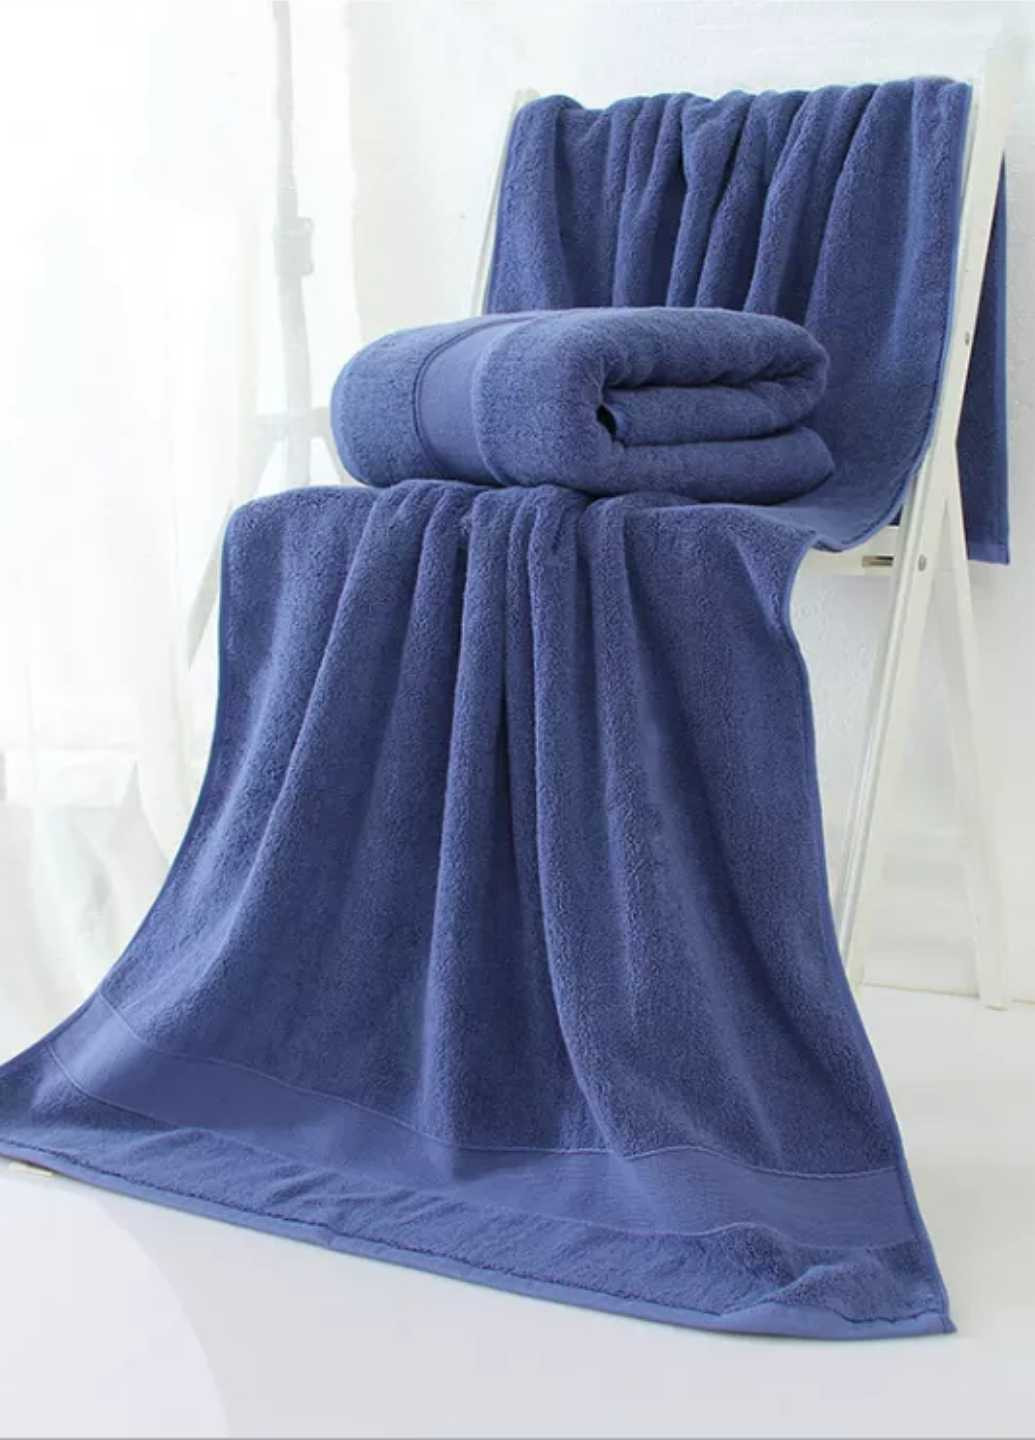 Lovely Svi набор полотенец махровых банных (хлопок) 2 шт в подарочном пакете размер: 70 на 140 см синий синий производство - Китай